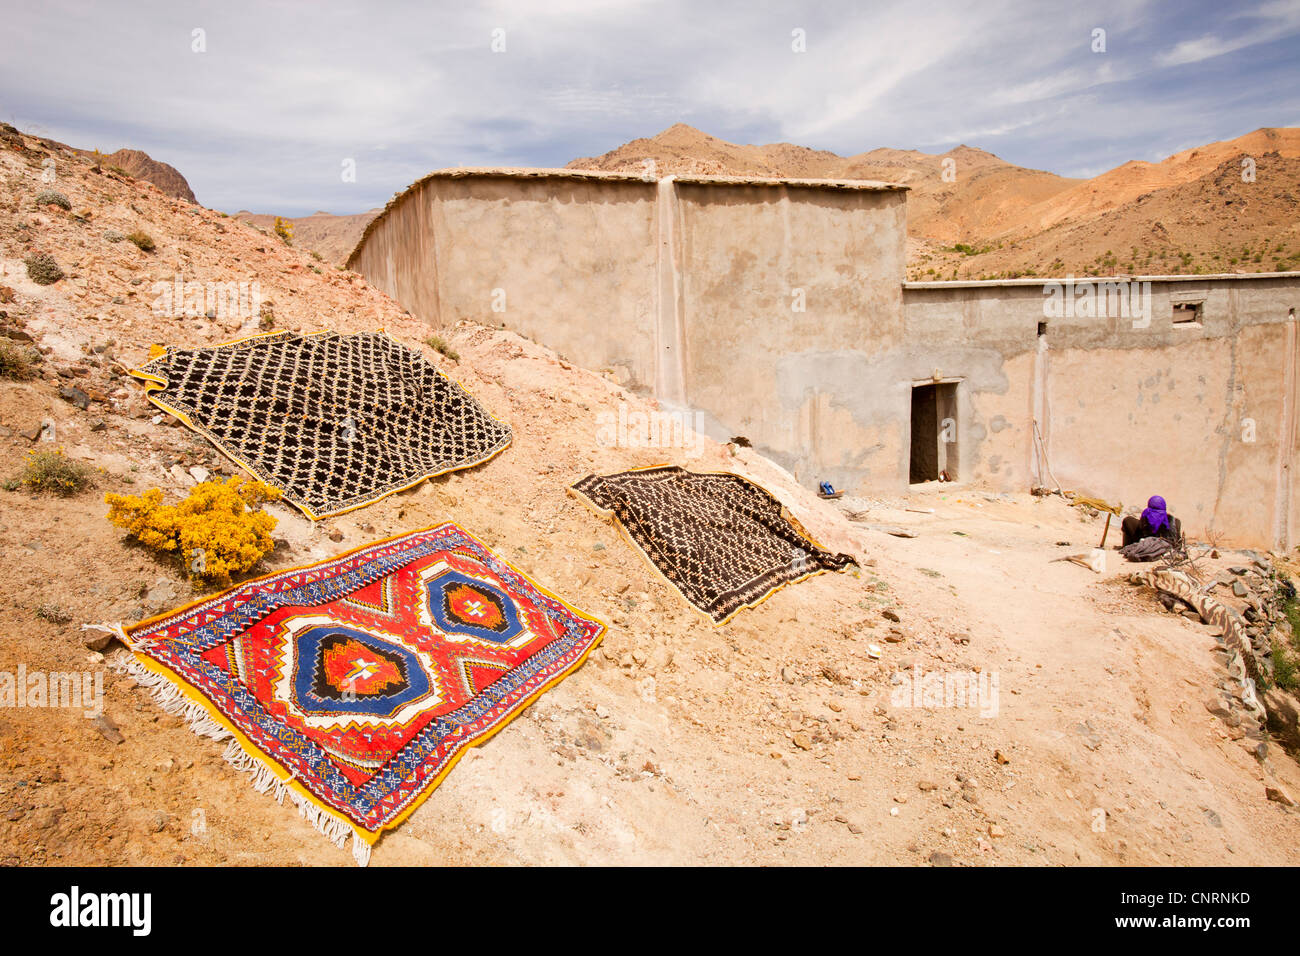 Tapis marocain à l'extérieur d'une maison berbère dans une vallée de l'Anti Atlas montagnes du Maroc, l'Afrique du Nord. Banque D'Images